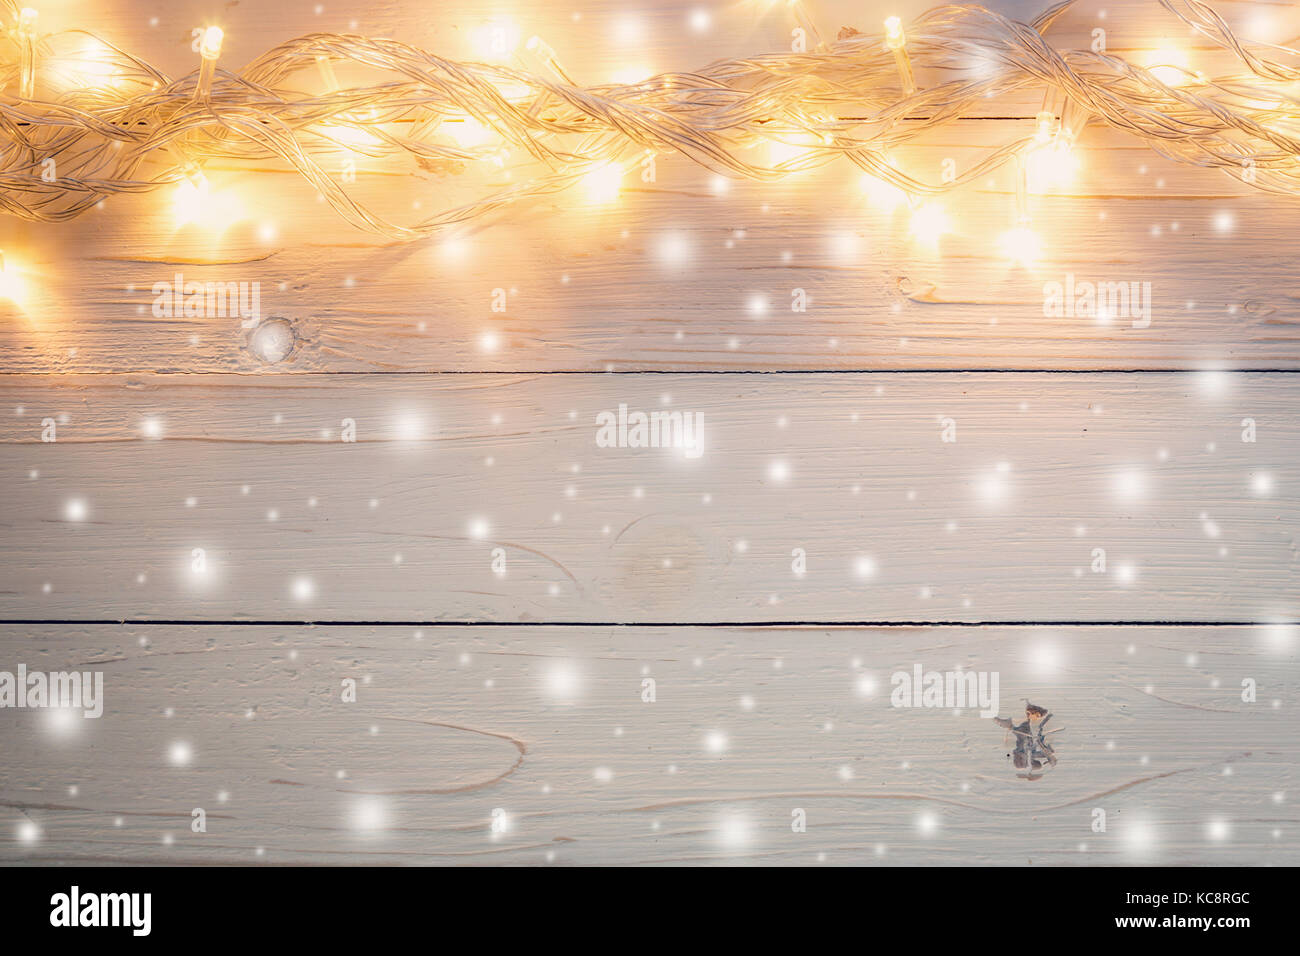 Đón Giáng Sinh trong không gian ấm áp và lãng mạn với hình ảnh nền ánh đèn Noel lung linh. Hãy tạo cho mình cảm giác yên bình và thư thái khi ngắm nhìn ánh sáng tràn ngập không gian, cảm nhận sự đong đầy của tình yêu và niềm hy vọng.